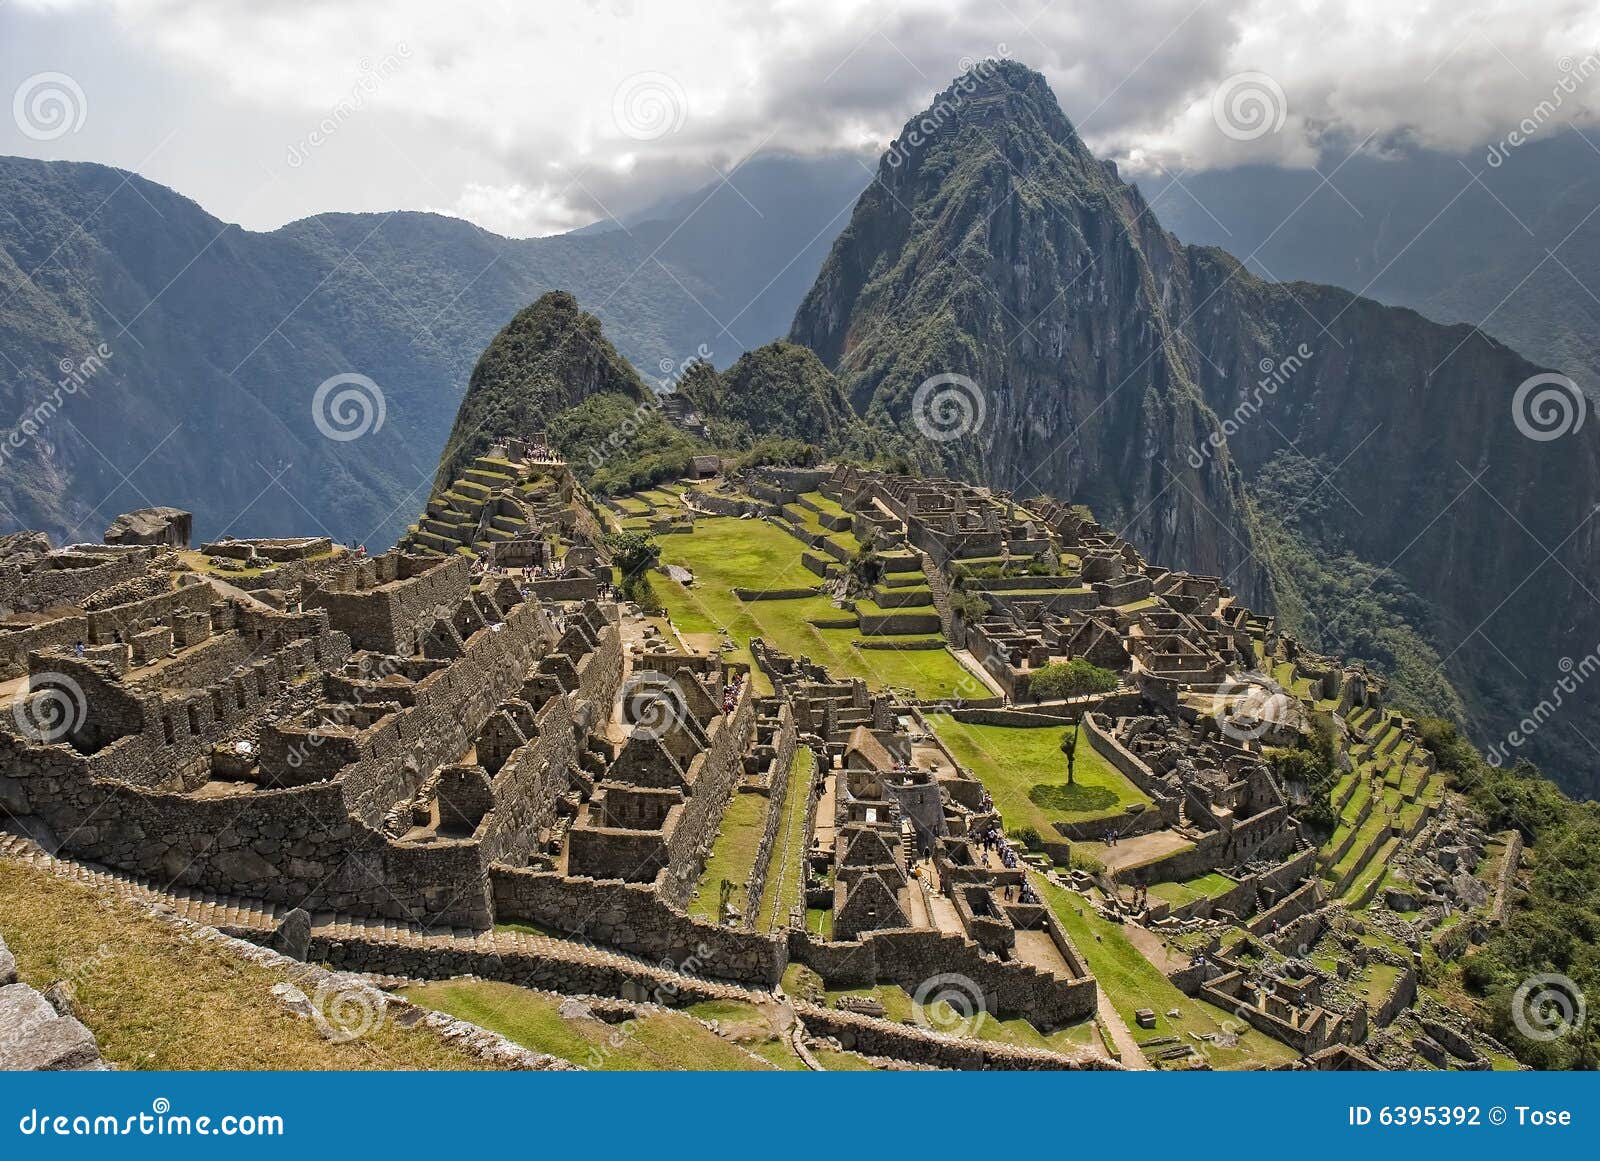 ancient inca ruins of machupicchu